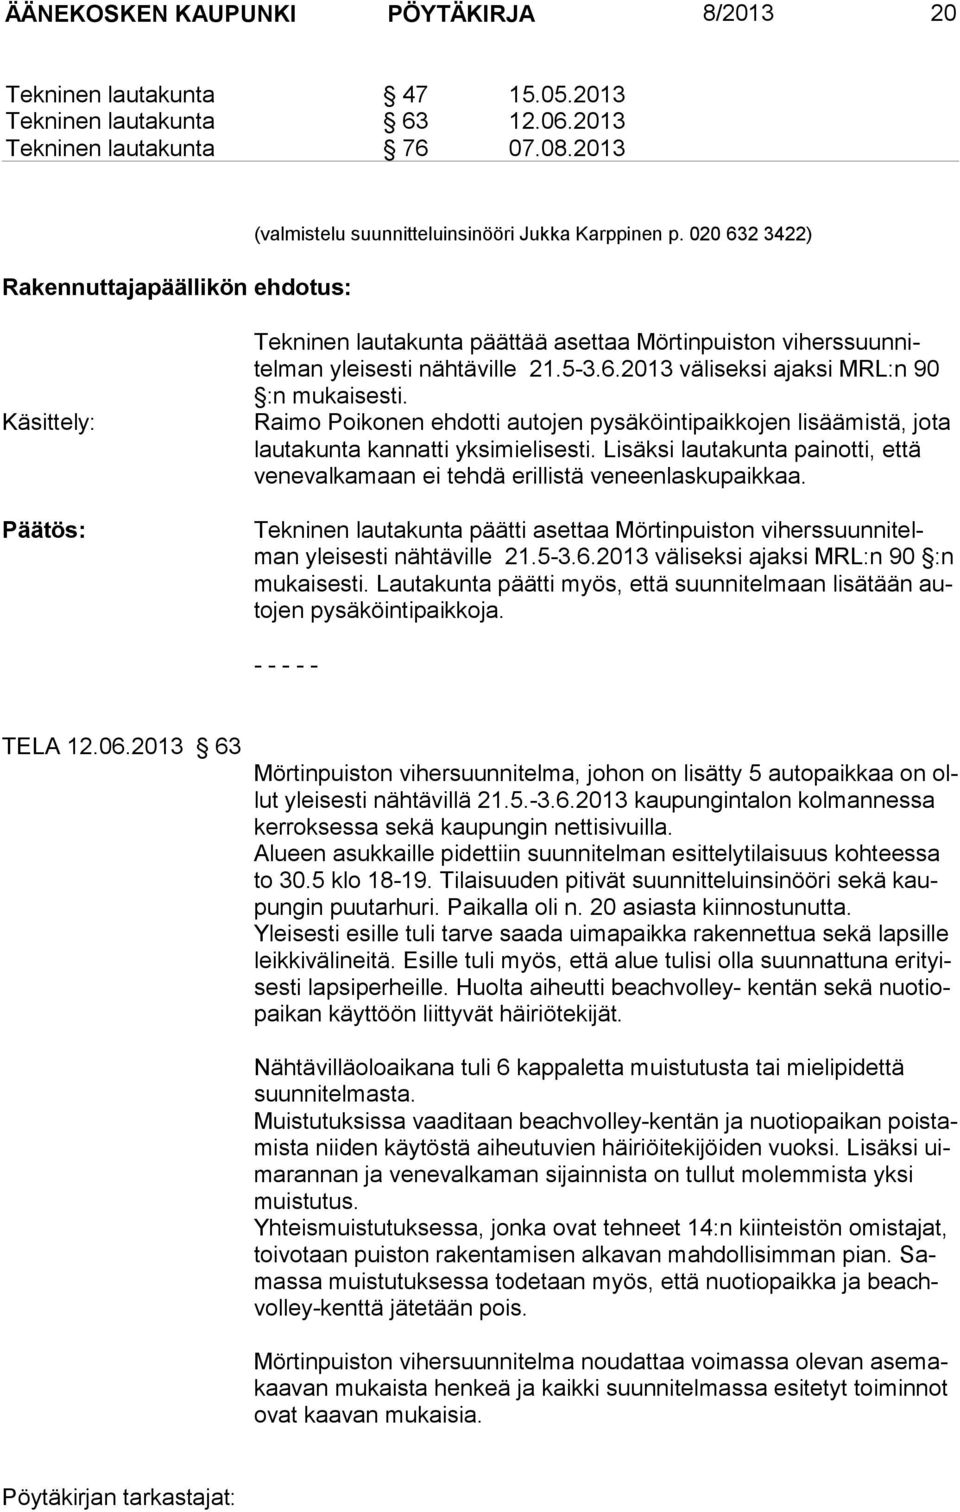 020 632 3422) Käsittely: Tekninen lautakunta päättää asettaa Mörtinpuiston viherssuunnitelman yleisesti nähtäville 21.5-3.6.2013 väliseksi ajaksi MRL:n 90 :n mukaisesti.